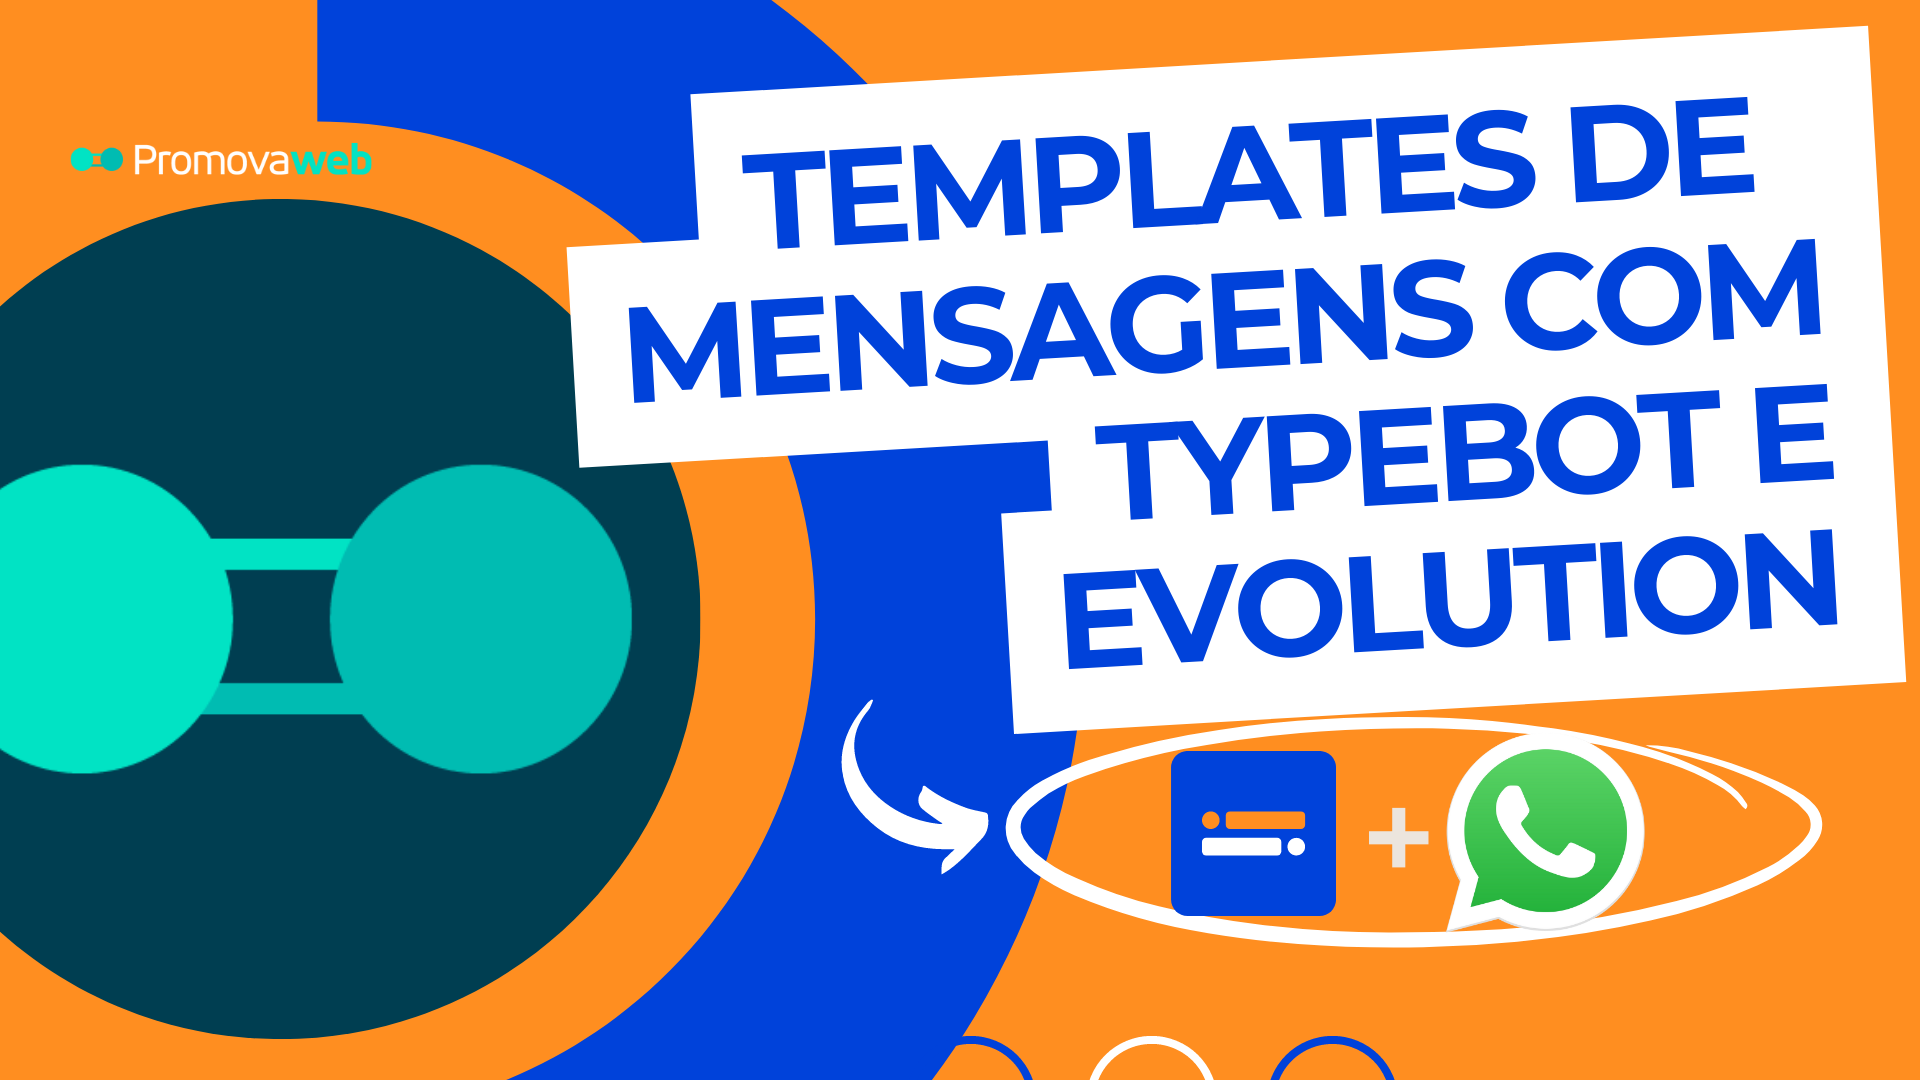 Como enviar Templates de Mensagems com o Typebot e Evolution